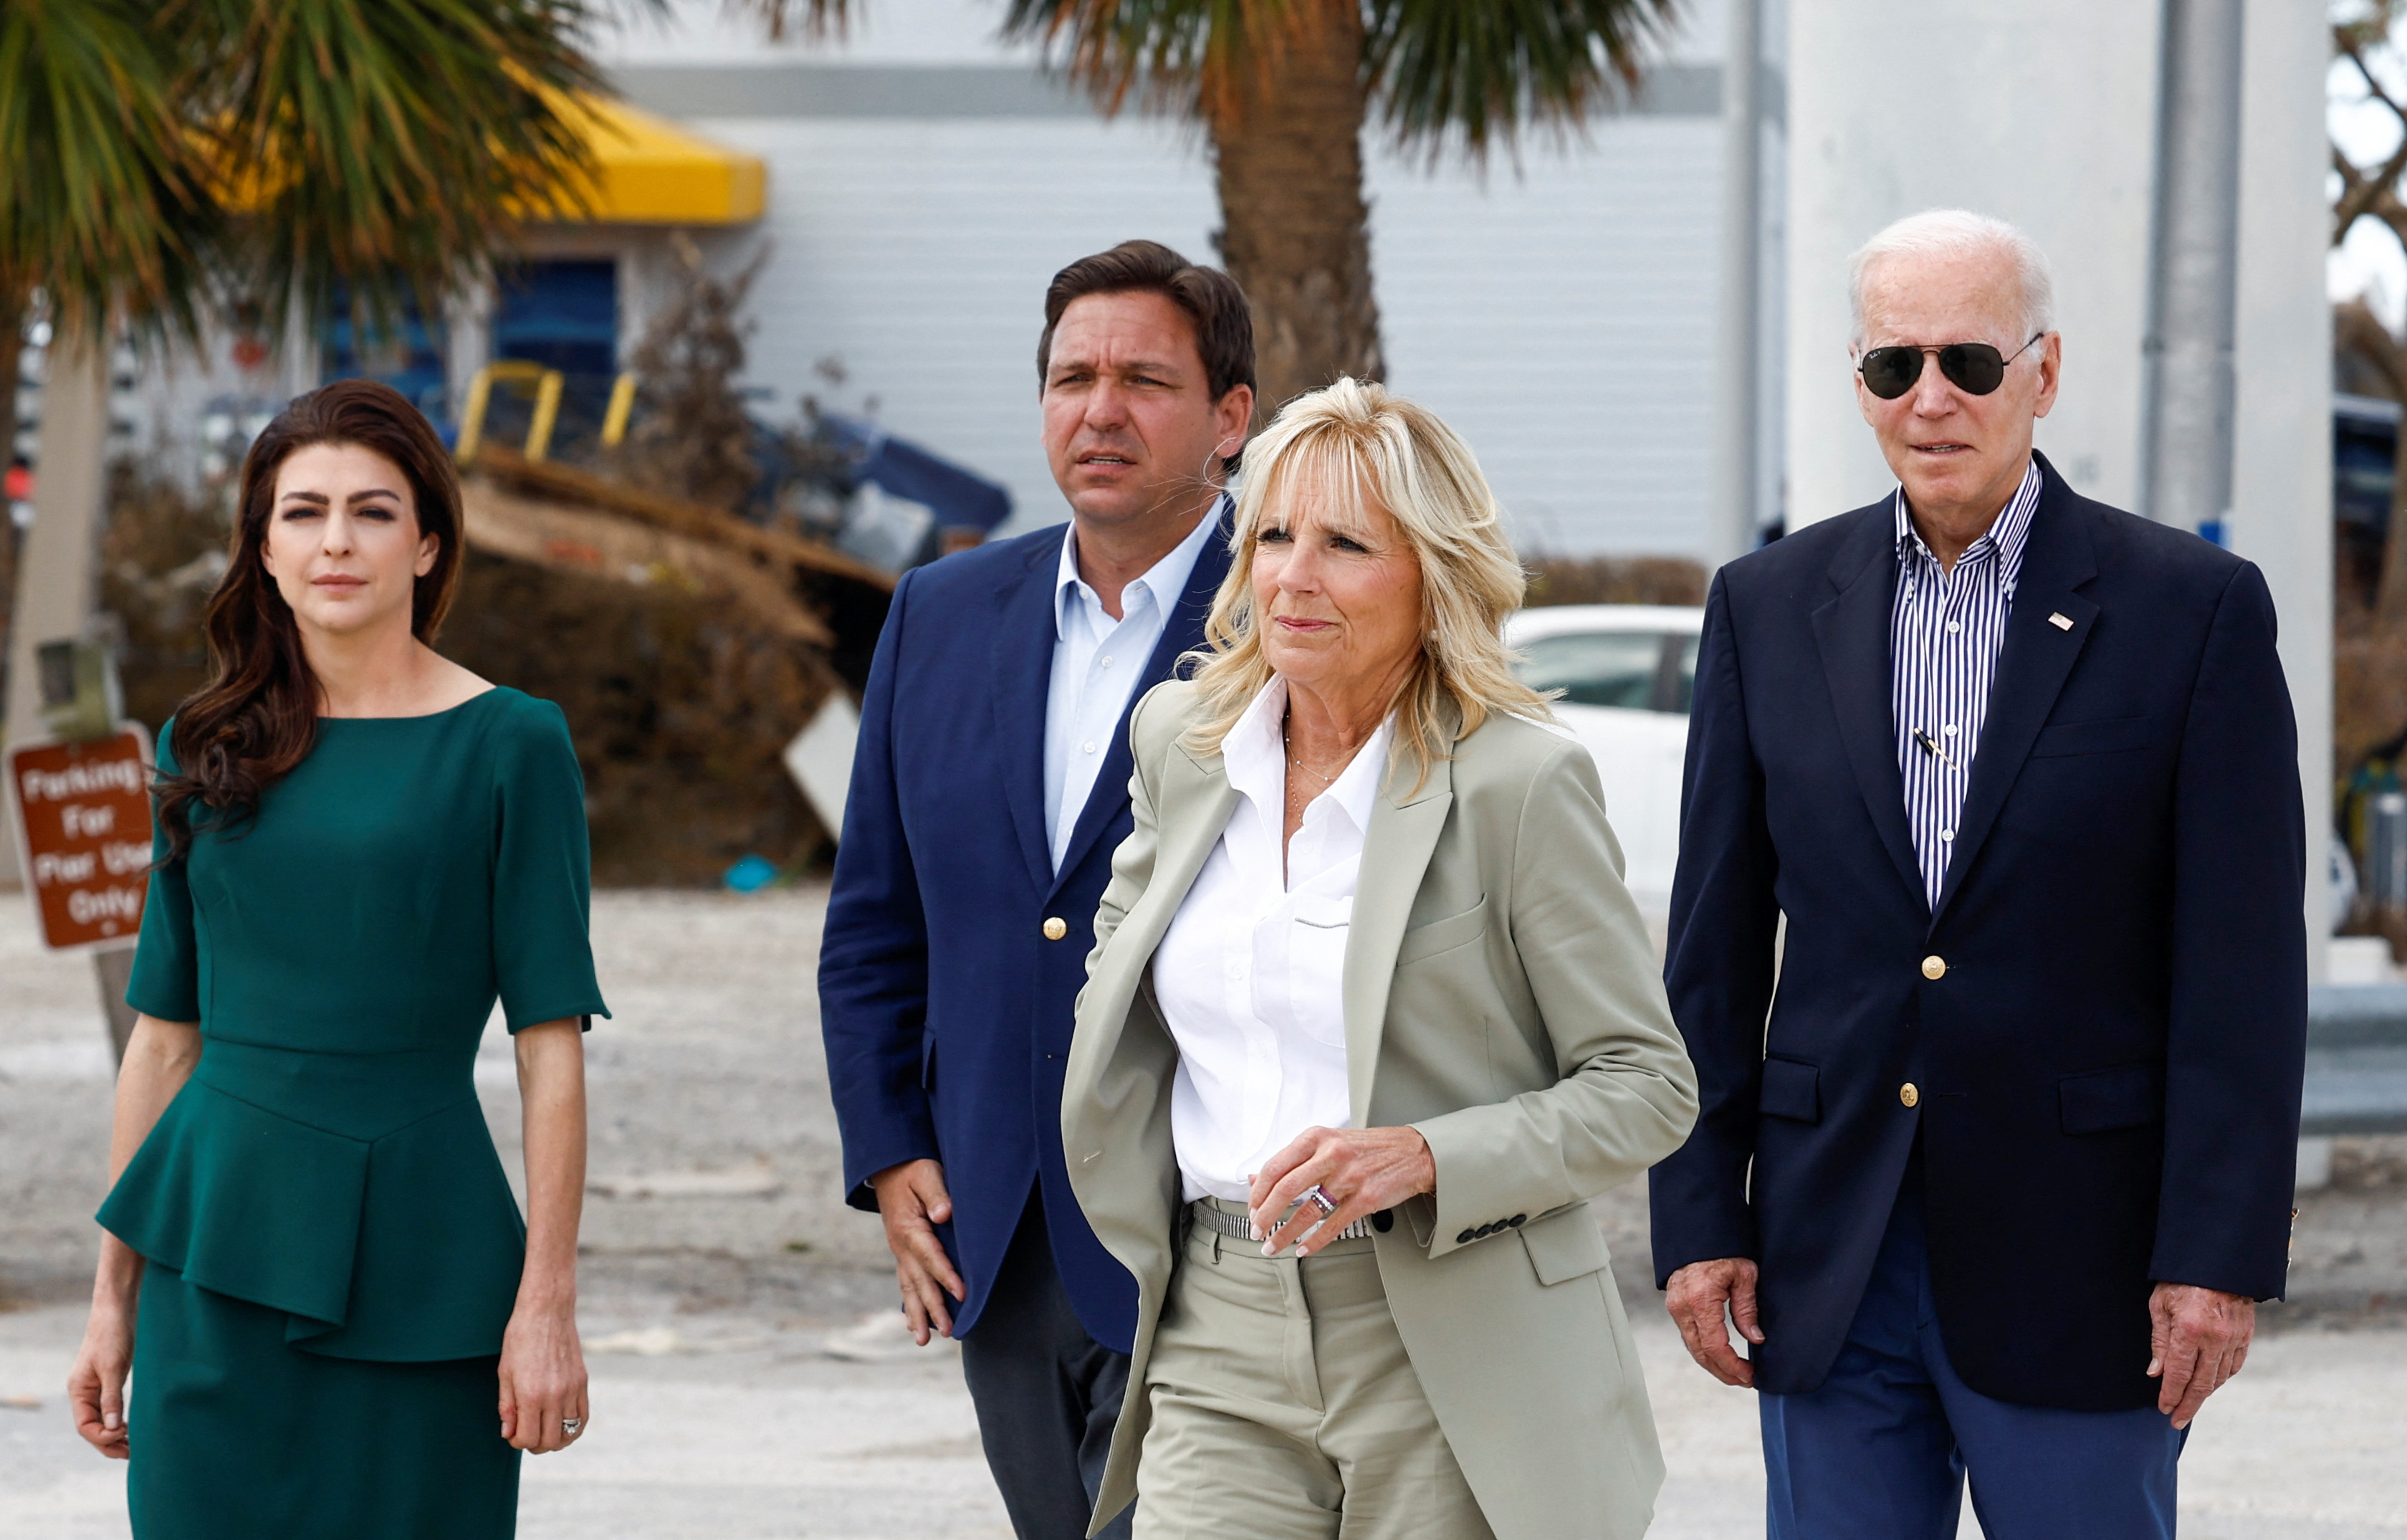 El presidente Joe Biden y la primera dama Jill Biden caminan junto a Ron DeSantis y Casey DeSantis durante una visita a Florida (REUTERS/Evelyn Hockstein)